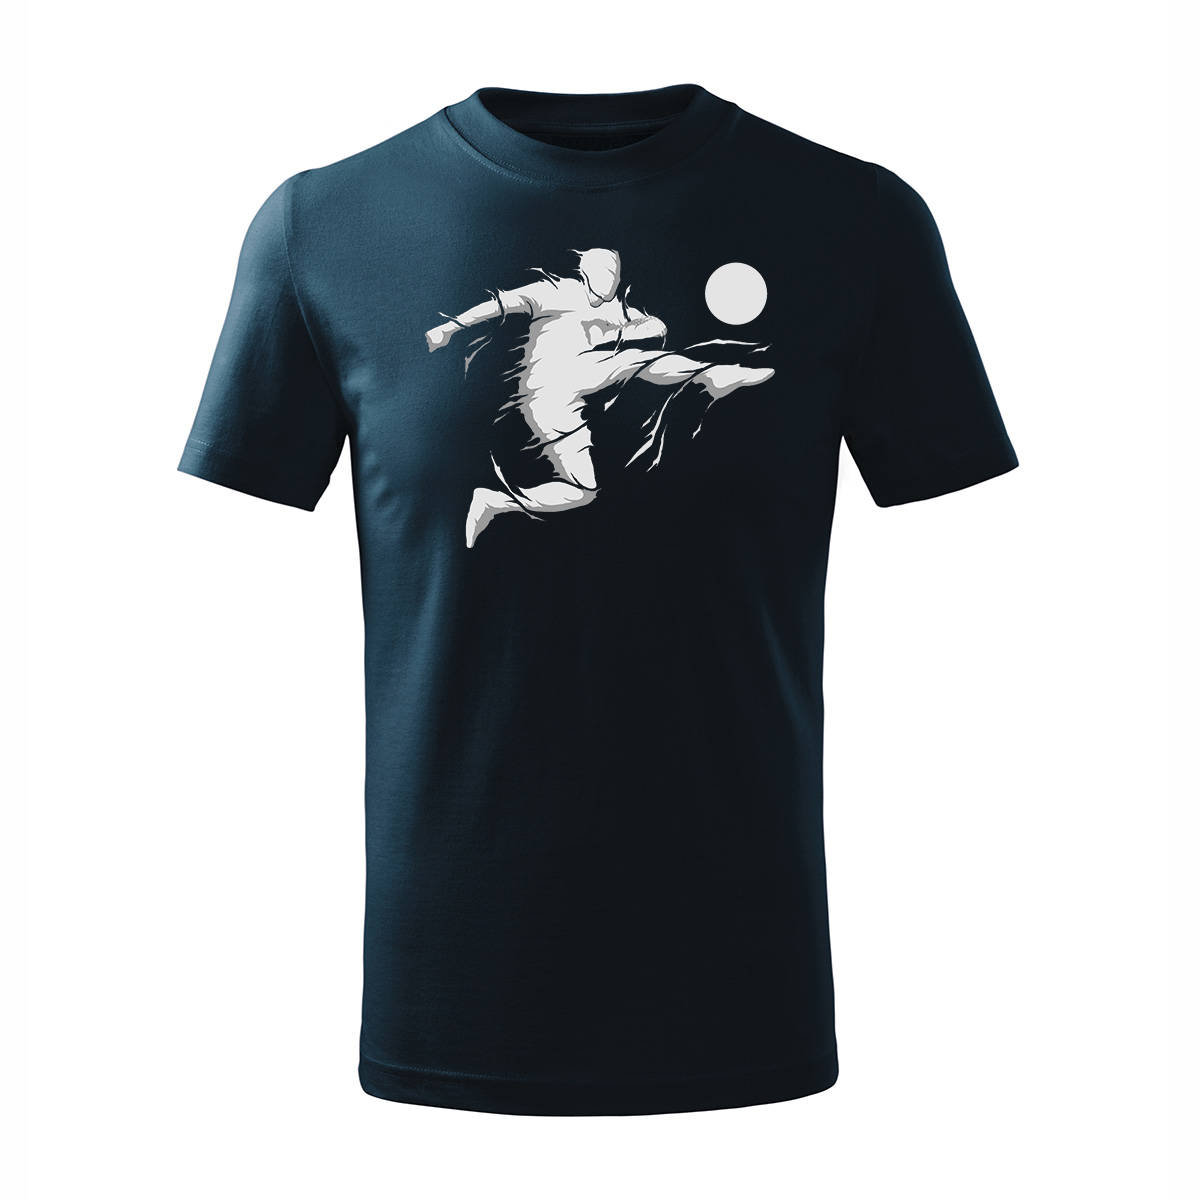 Koszulka dla dzieci dziecięca dla piłkarza z piłkarzem piłkarz piłkarska granatowa-158 cm/12 lat